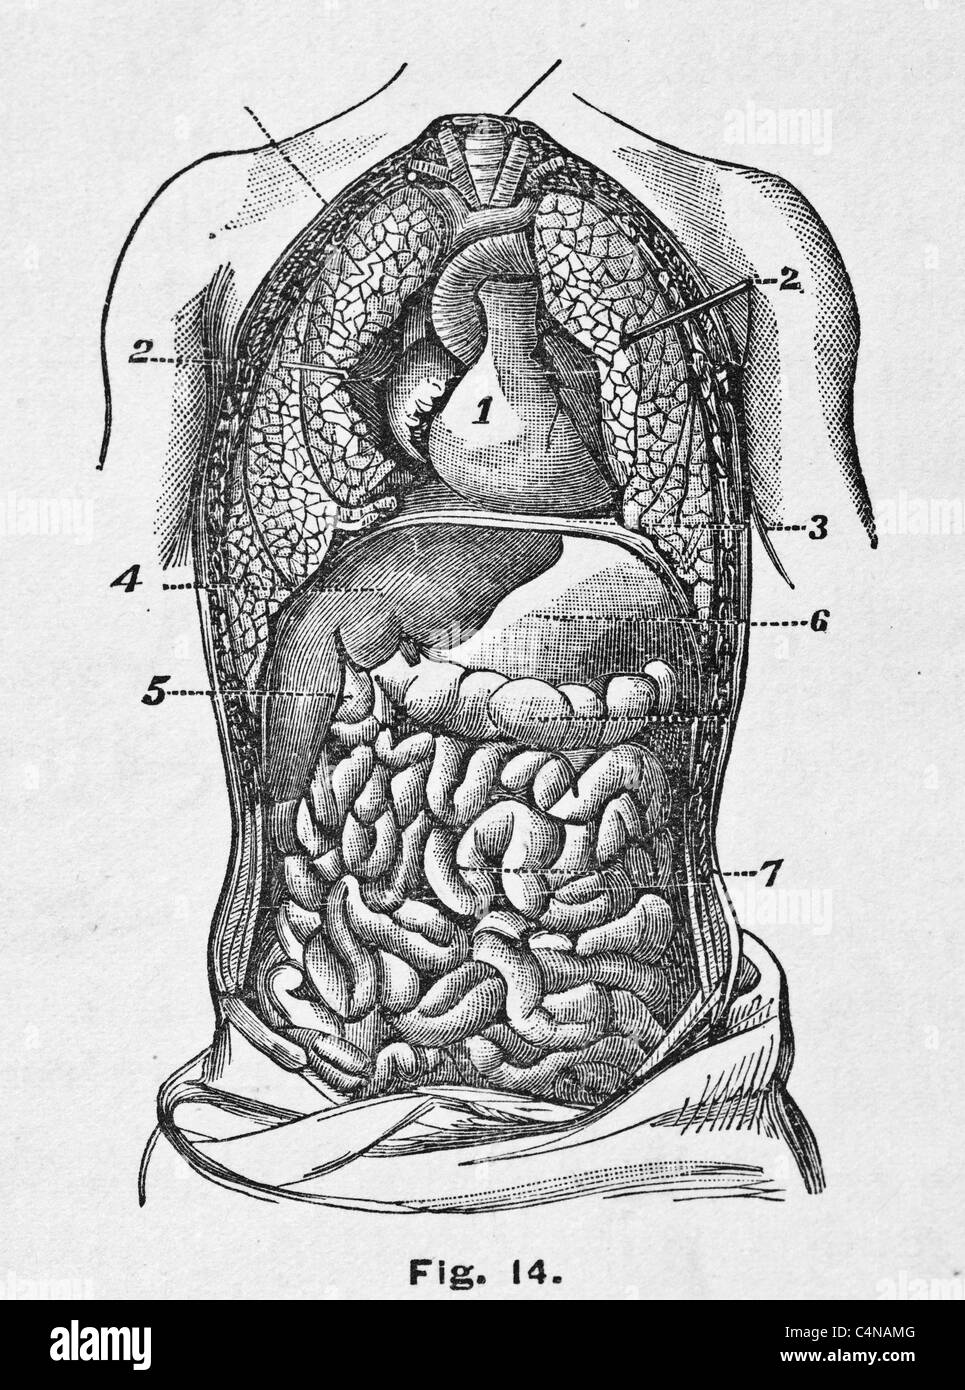 И других органов брюшной полости. Органы брюшной полости. Расположение органов брюшной полости. Органы брюшной полости рисунок. Анатомия брюшной полости человека.